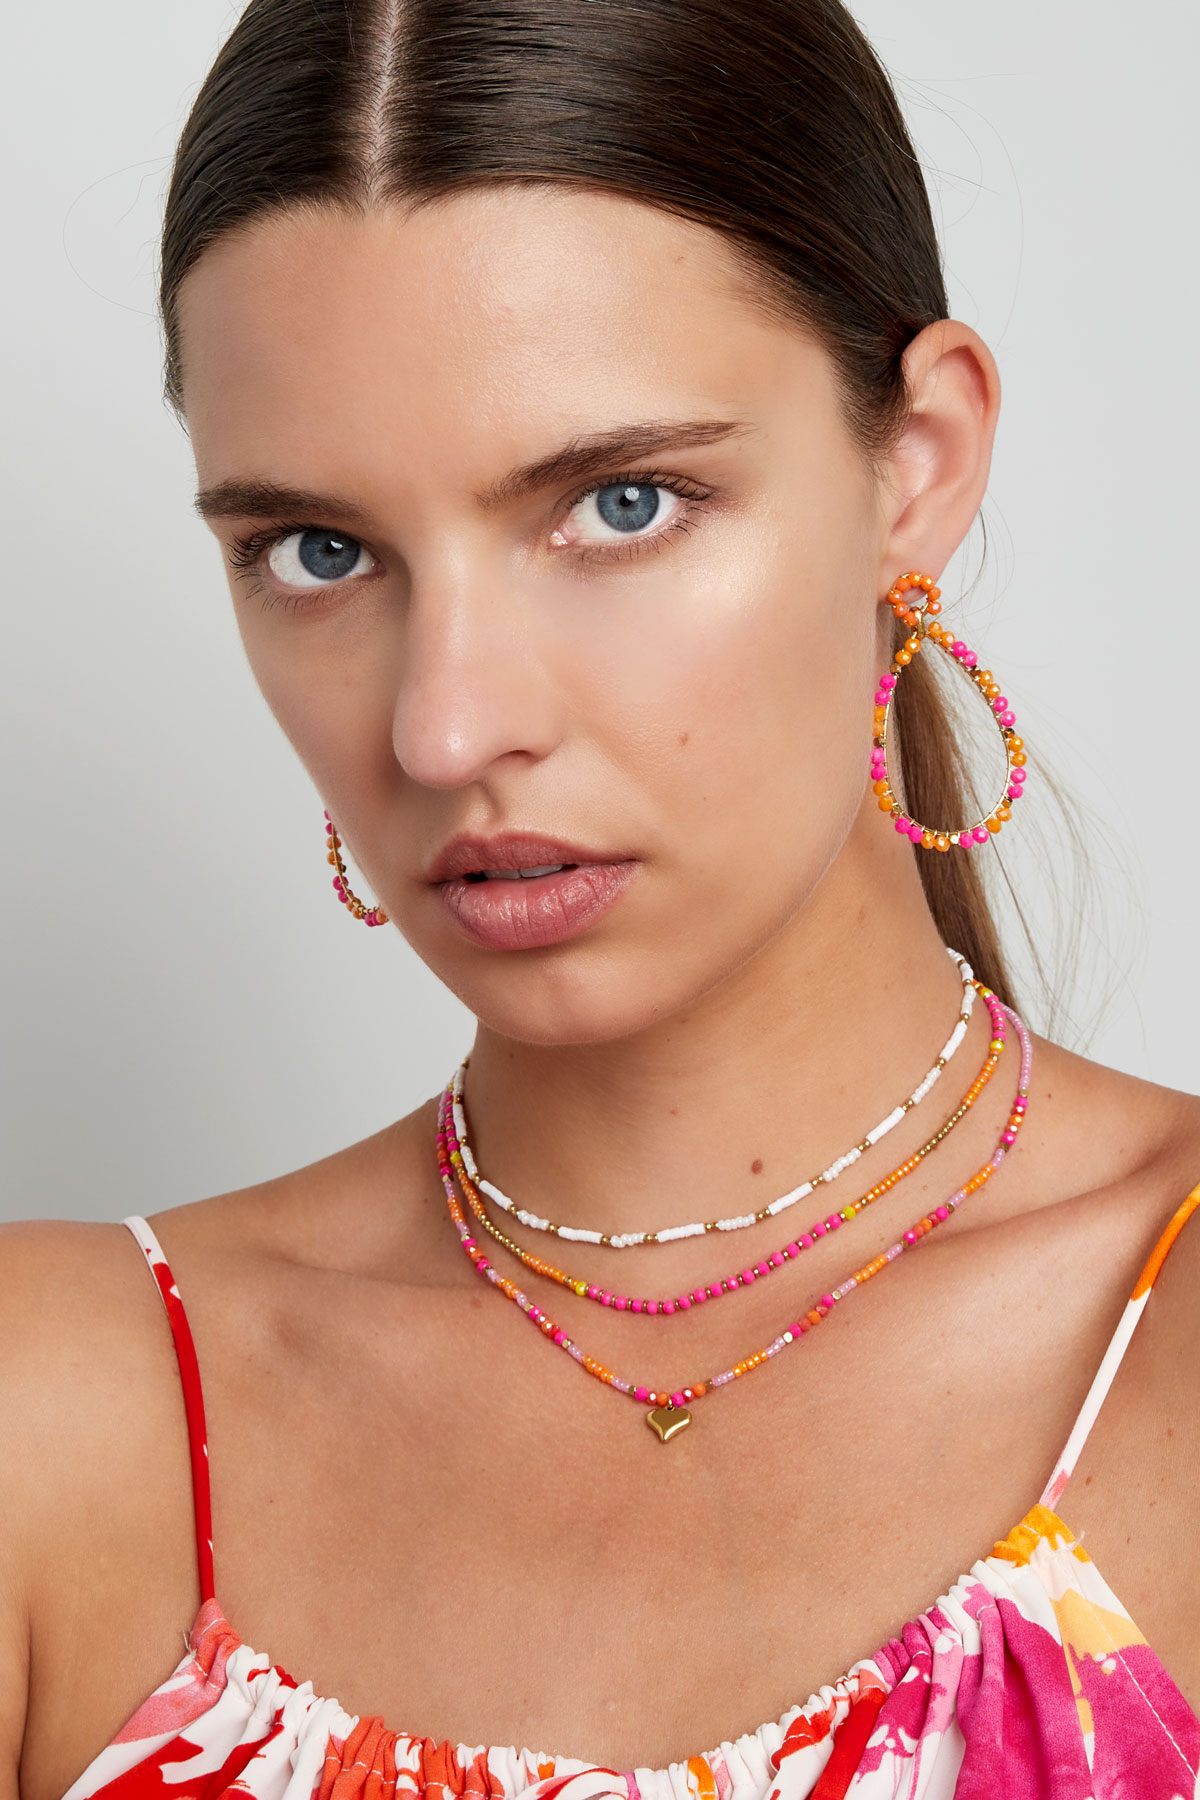 Collier petites perles colorées - rose/orange Image2